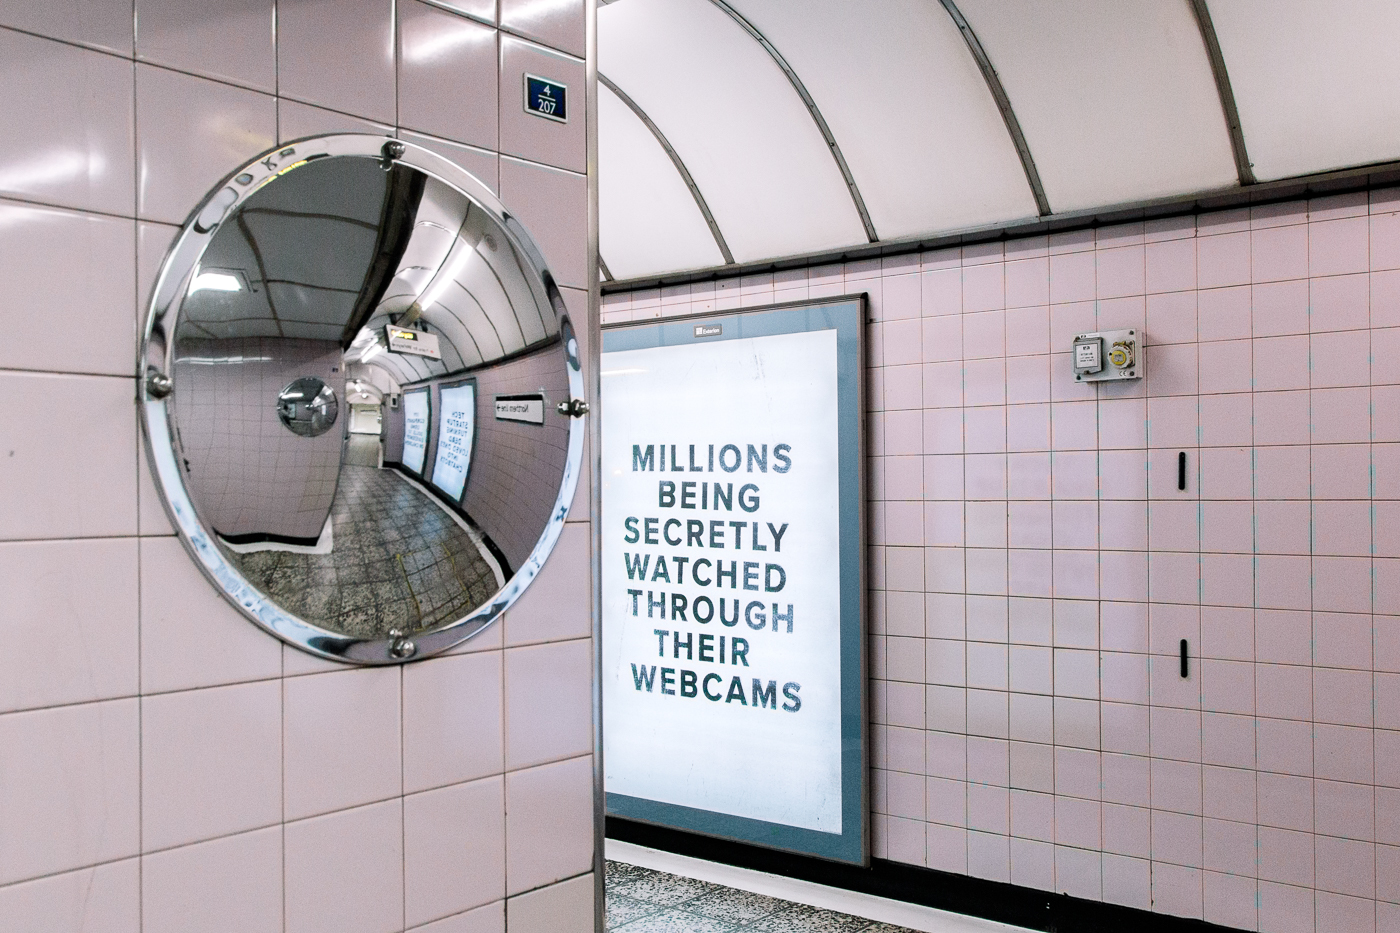 Pop-up Netflix - Black Mirror à Old Street Station, Londres. Un miroir rond dans un couloir devant un panneau "Millions being secretly watched through their webcam" 